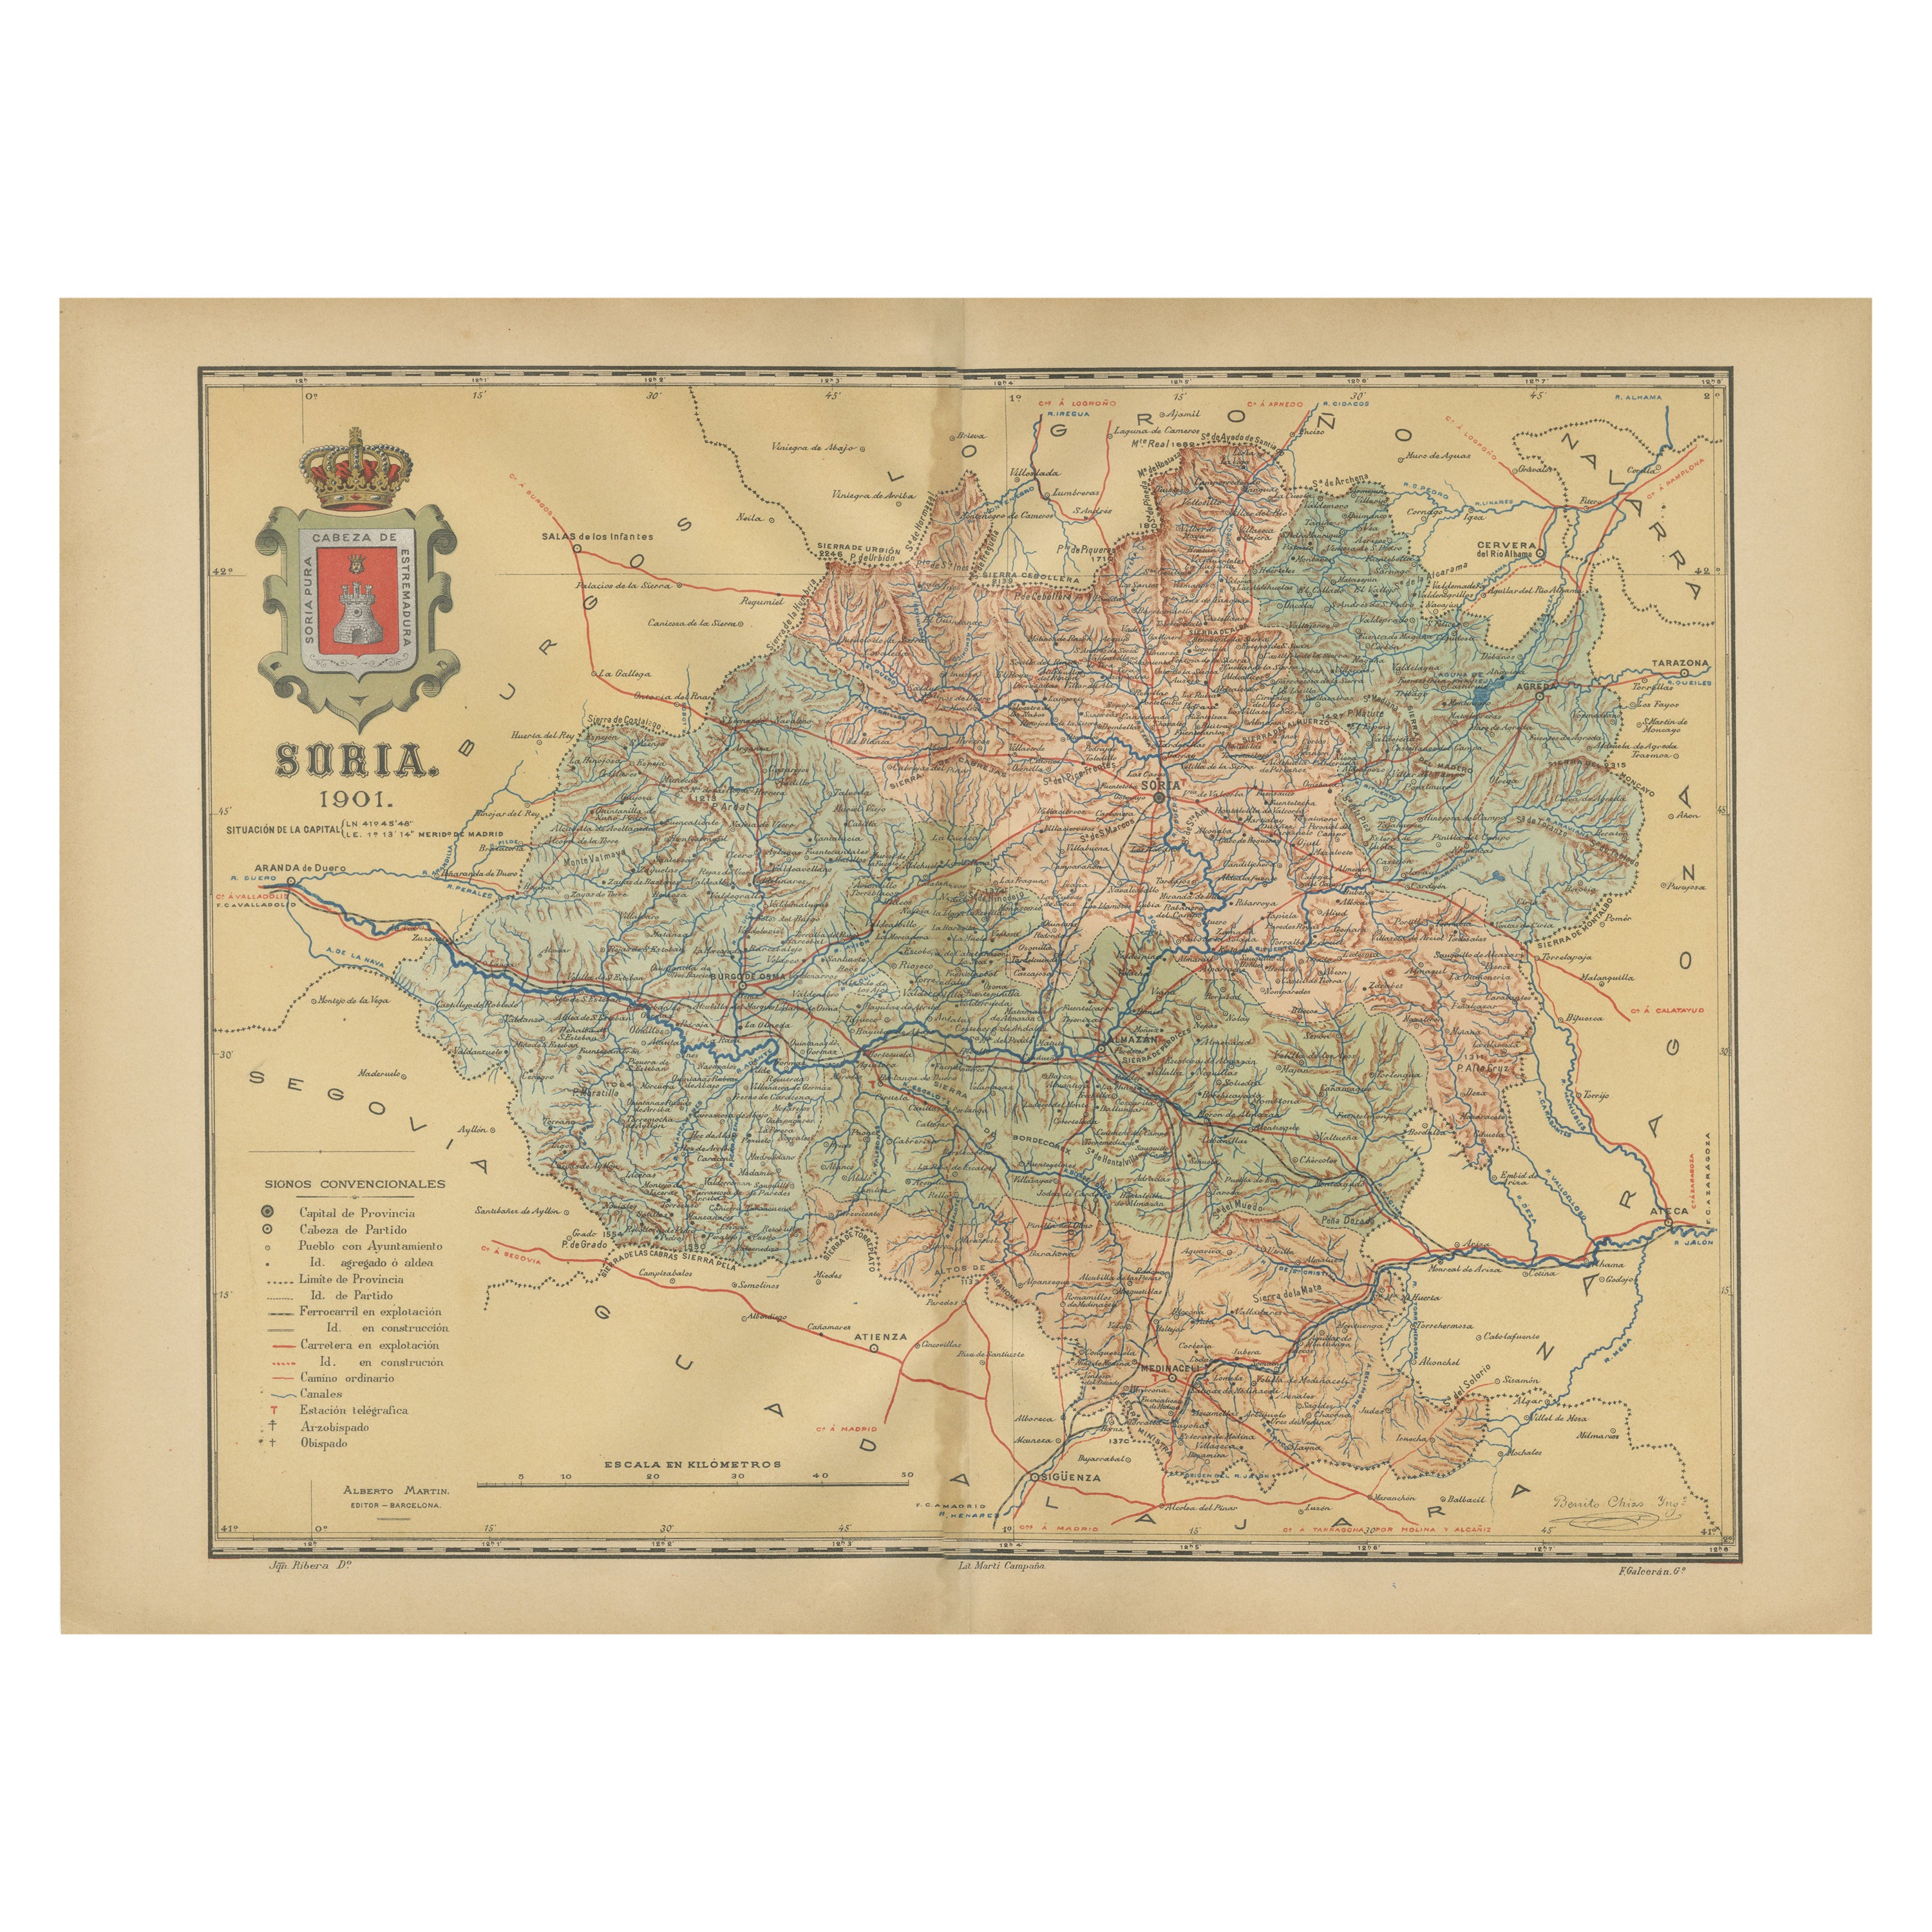 Carte de la province de Soria, 1901 : cartographie détaillée du nord-est de l'Espagne